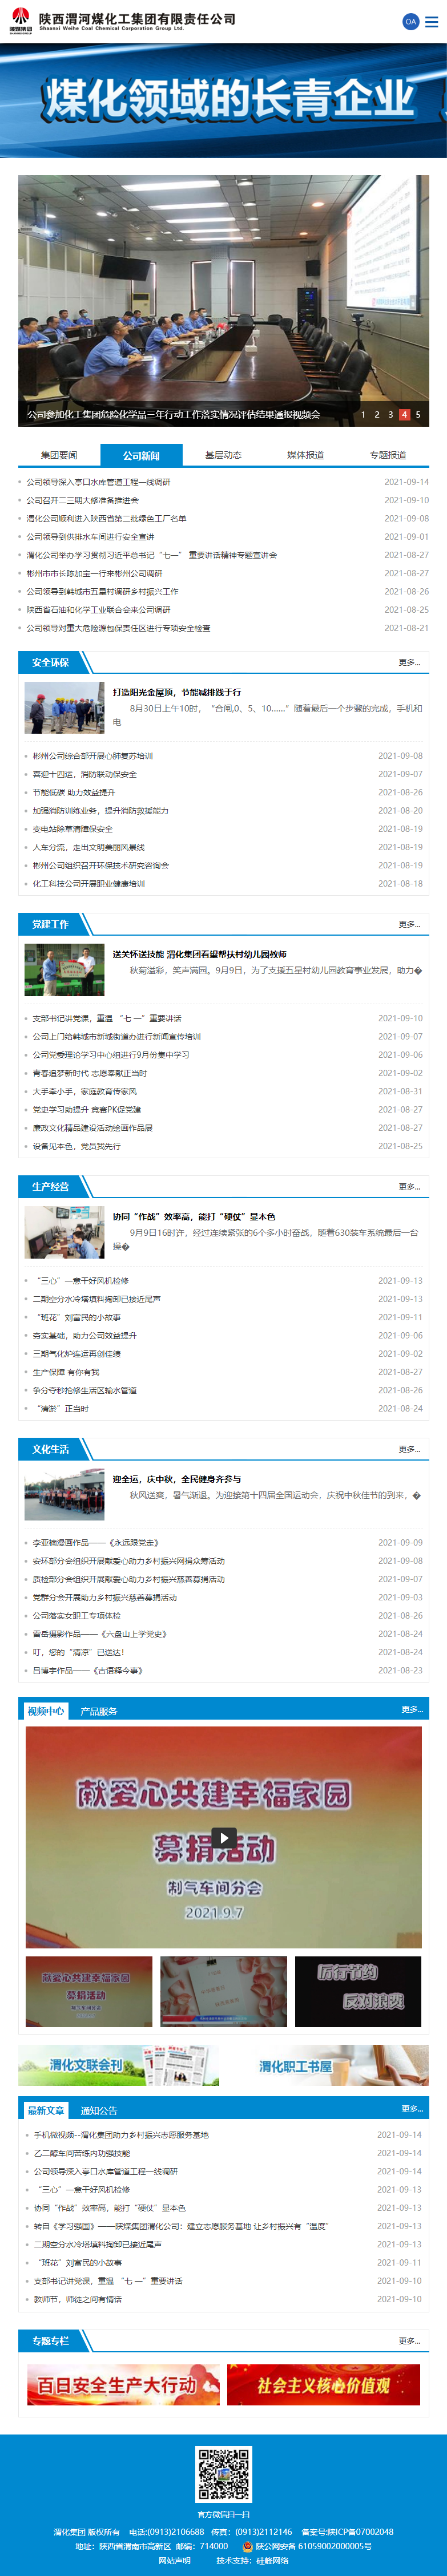 陕西渭河煤化工集团有限责任公司网站案例